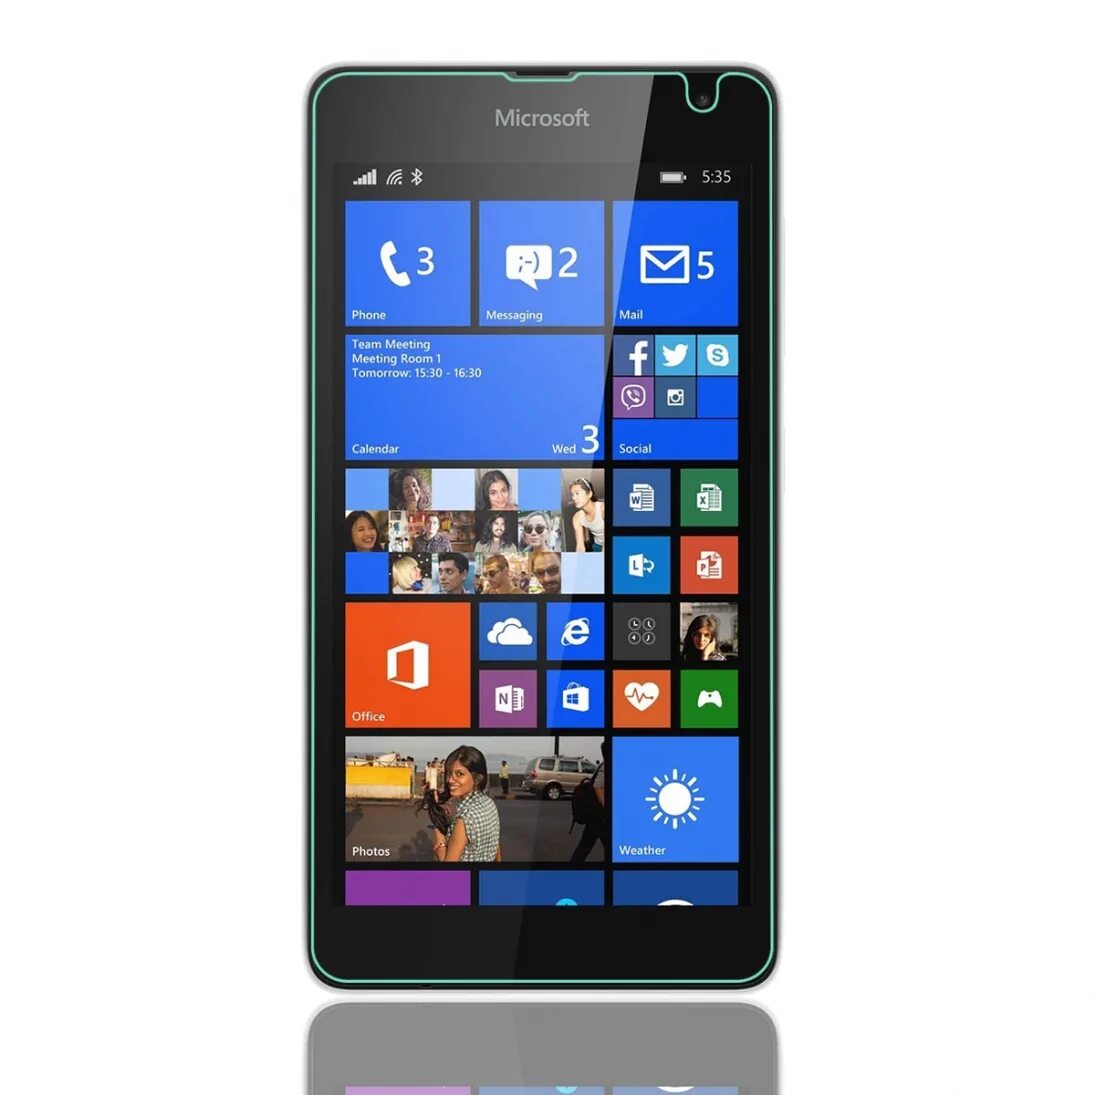 Microsoft 535. Майкрософт люмия 535. Nokia Lumia 535. Нокиа Майкрософт люмия 535. Смартфон Lumia 535.